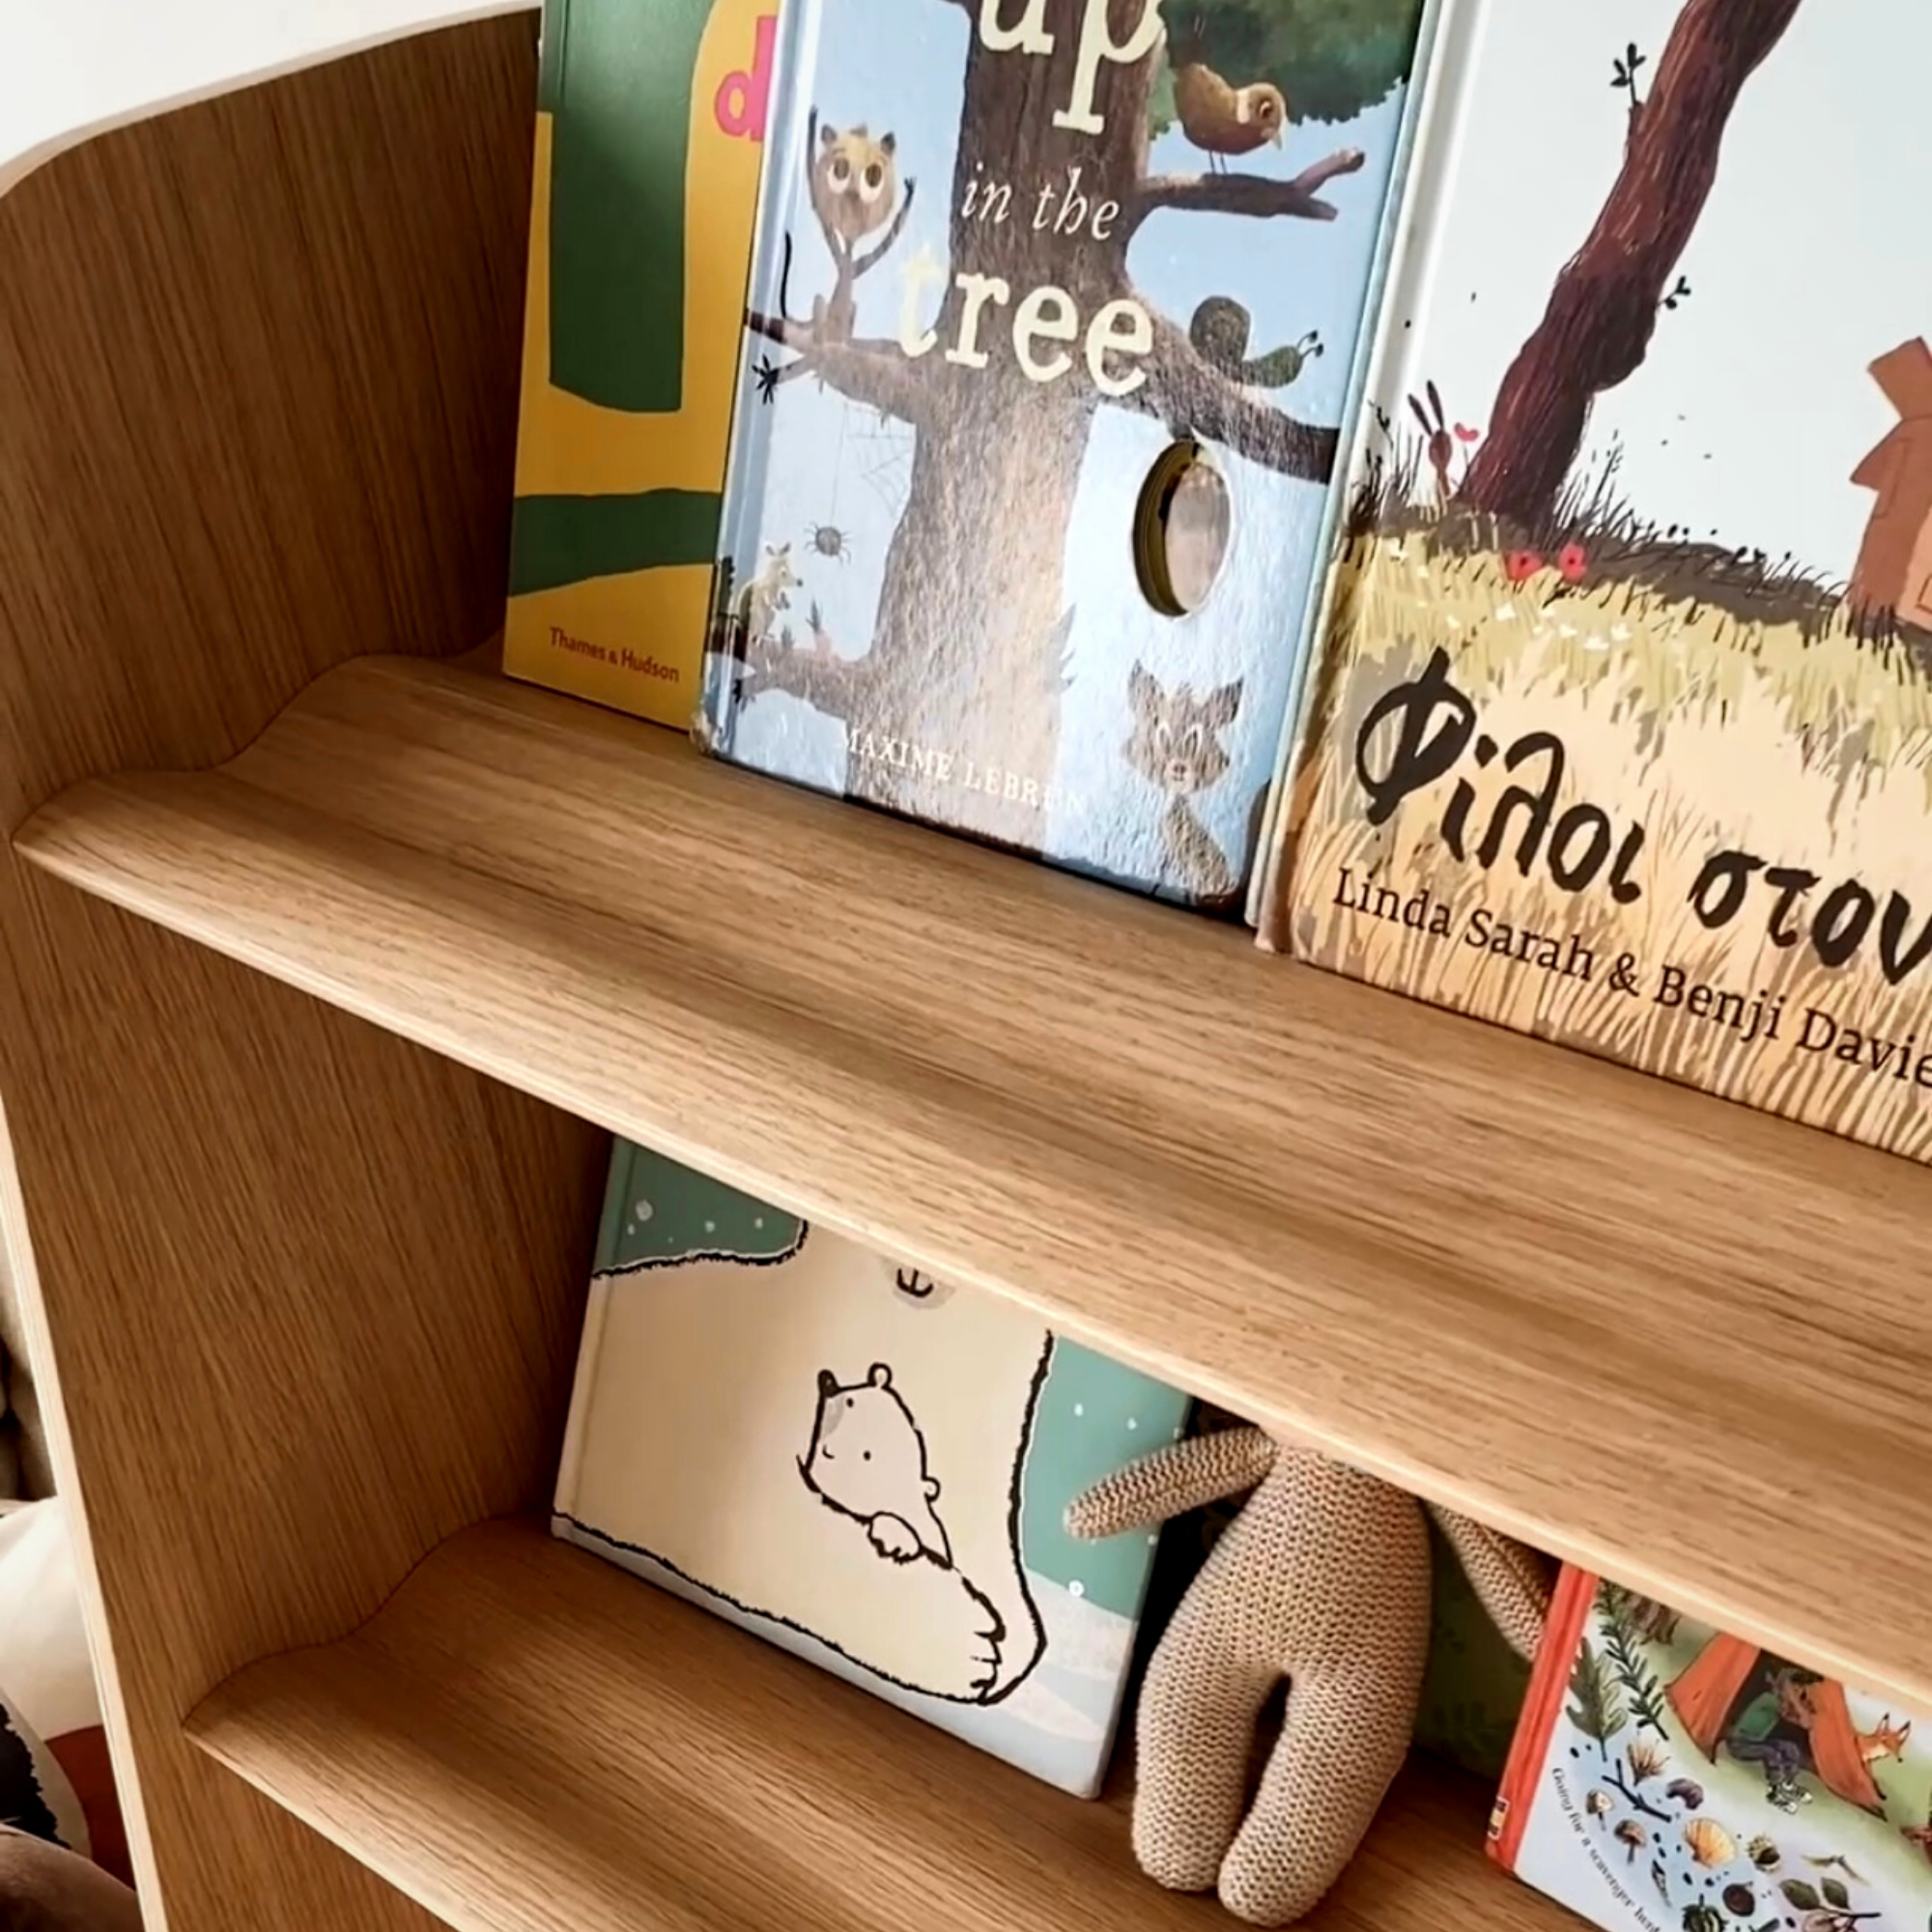 Bibliothèque pour enfants inspirée de Montessori, en bois de hêtre FSC, peinture non toxique, dès 1 an, design incurvé.